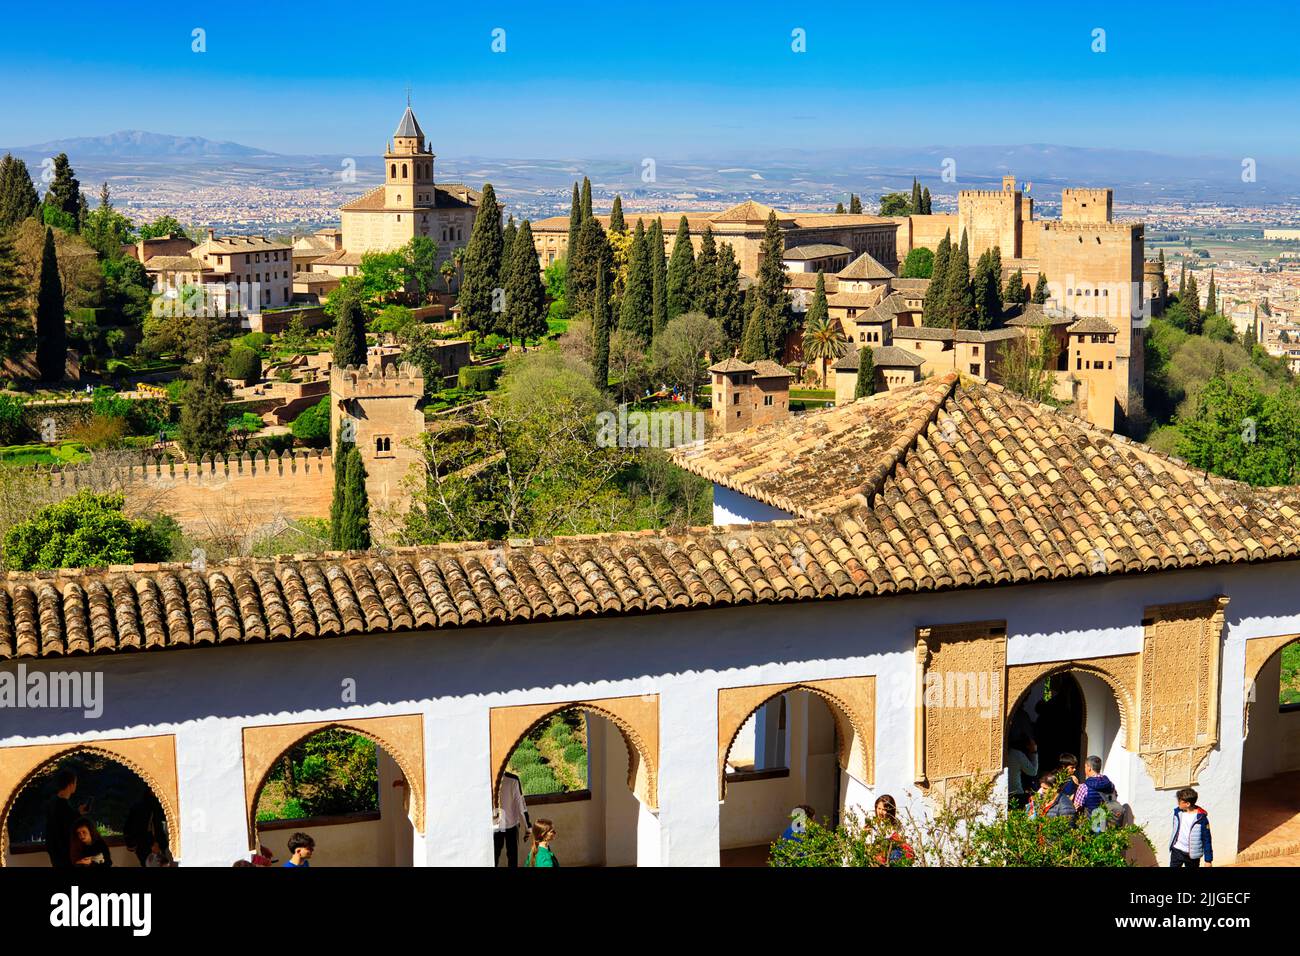 Vue aérienne sur le palais de l'Alhambra, les jardins et la forteresse de Grenade, Andalousie, Espagne Banque D'Images